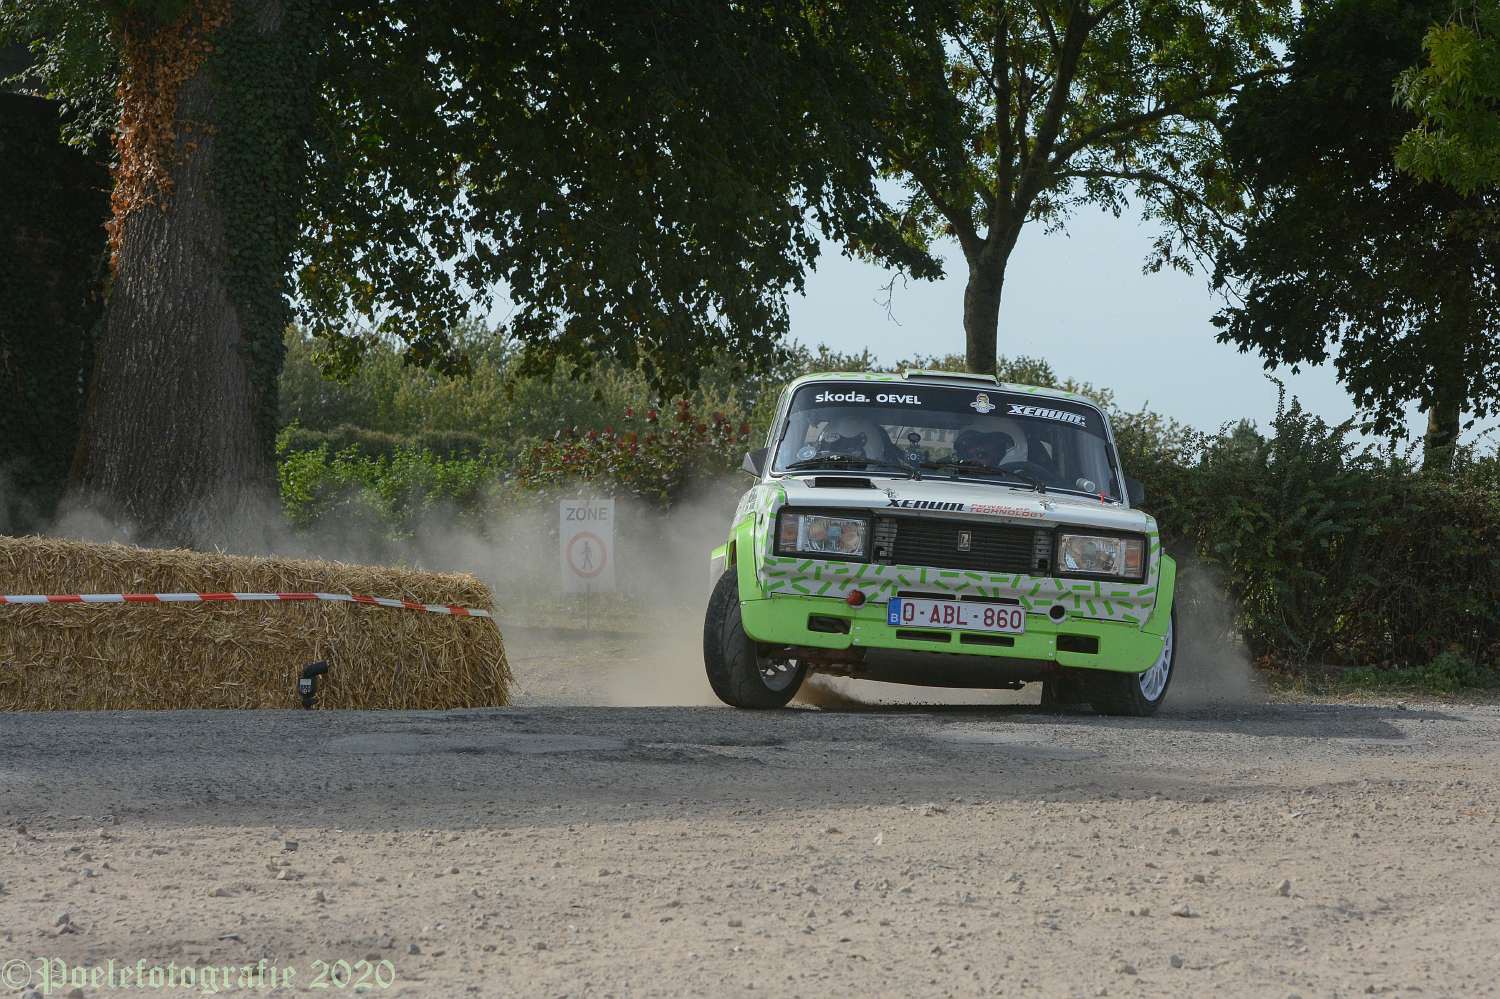 Foto-album Rallye Jean-Louis Dumont door Geert Evenepoel is toegevoegd.